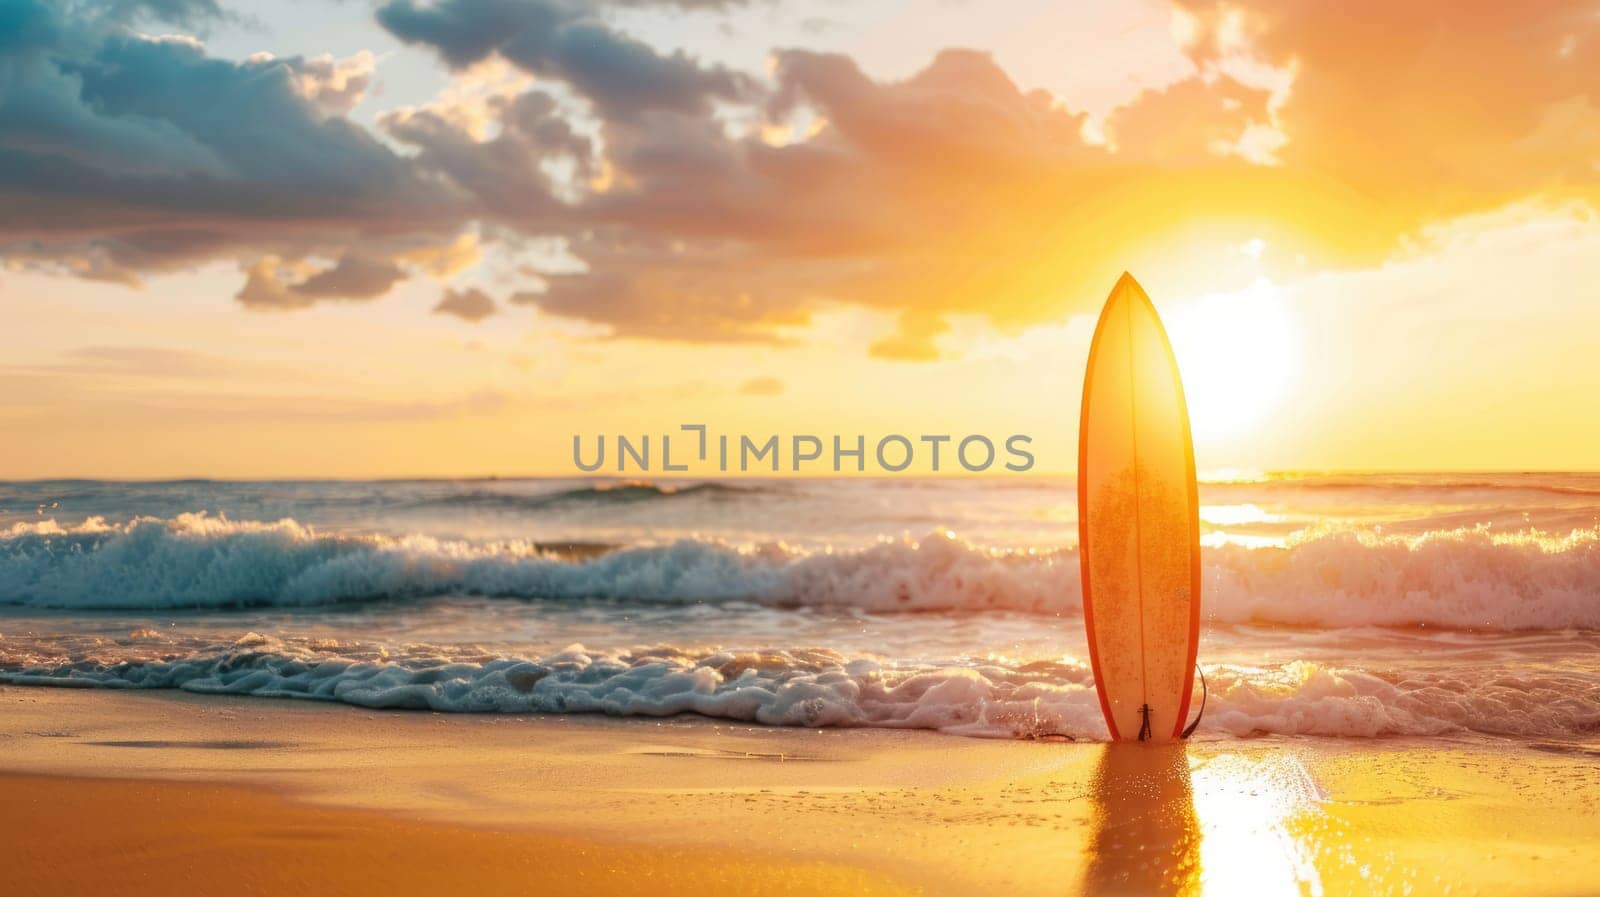 Surfboard and rising sun, coast beach at sunset. AI